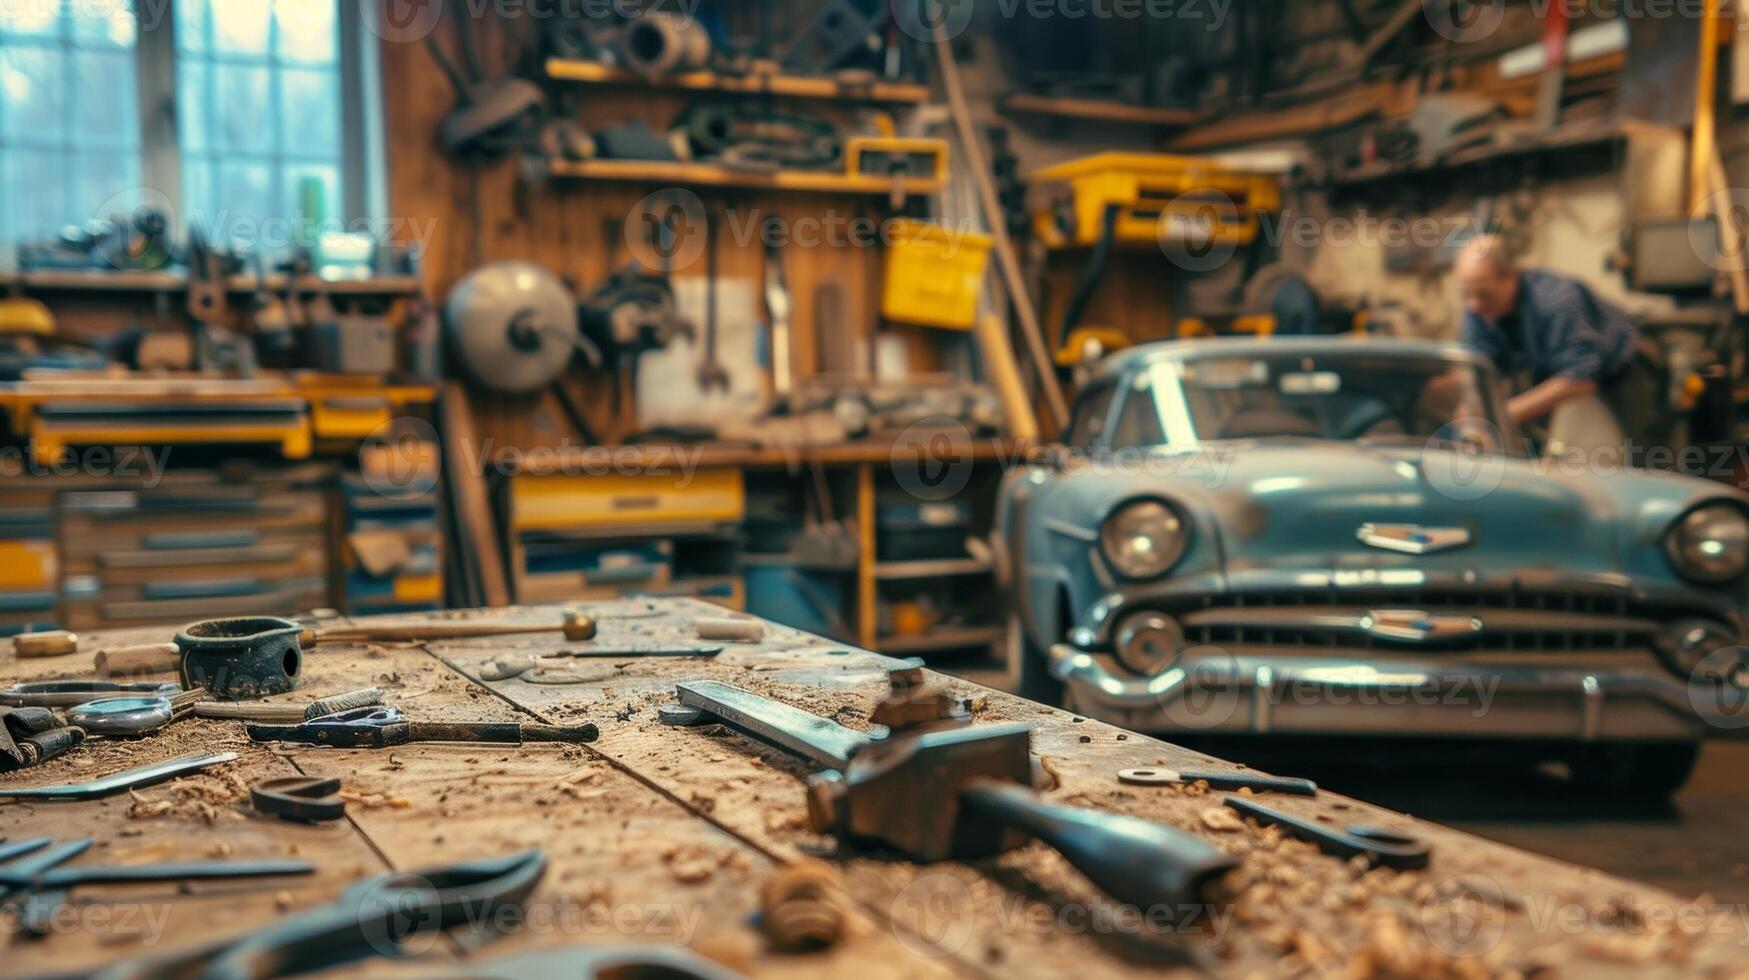 gammal bil delar och verktyg är tered på en arbetsbänk som de män arbete outtröttligt till göra framsteg på deras restaurering projekt foto